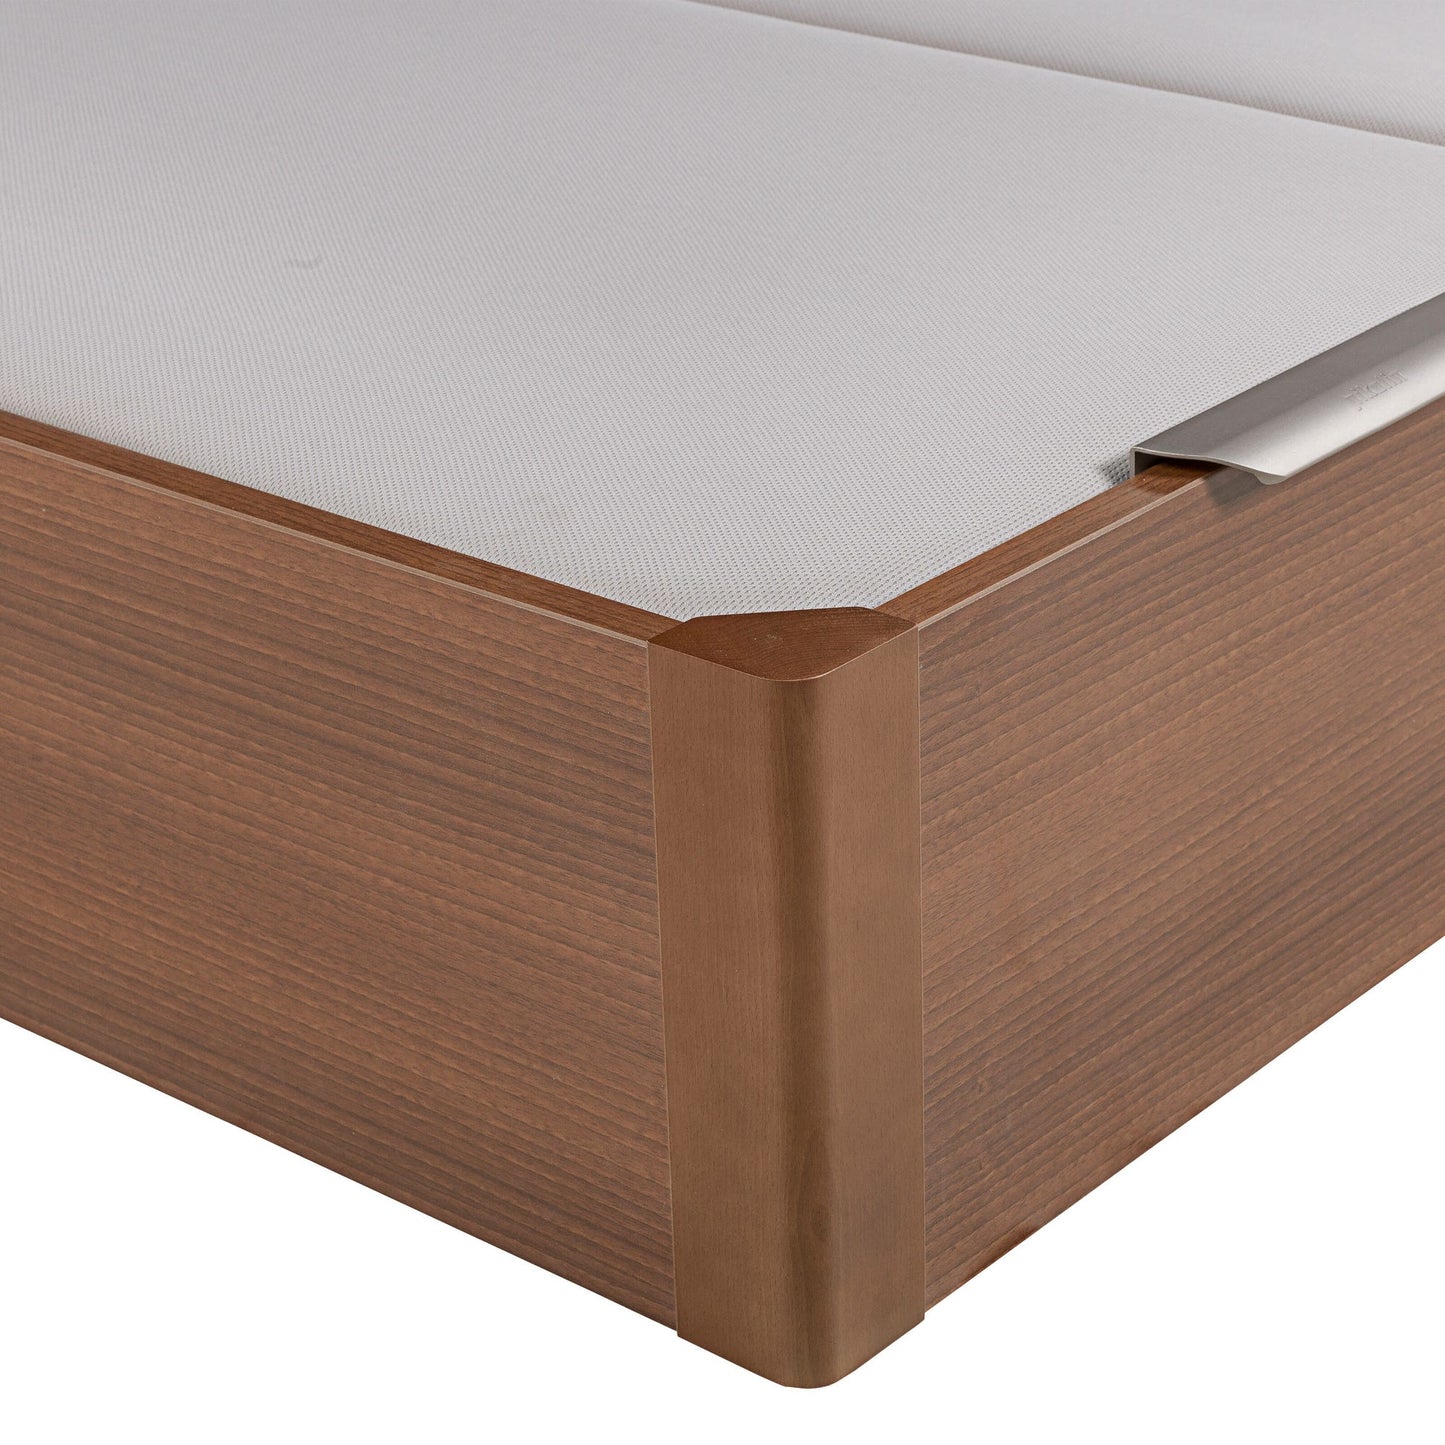 Canapé abatible de madera de tapa doble de color cerezo - DESIGN - 180x182